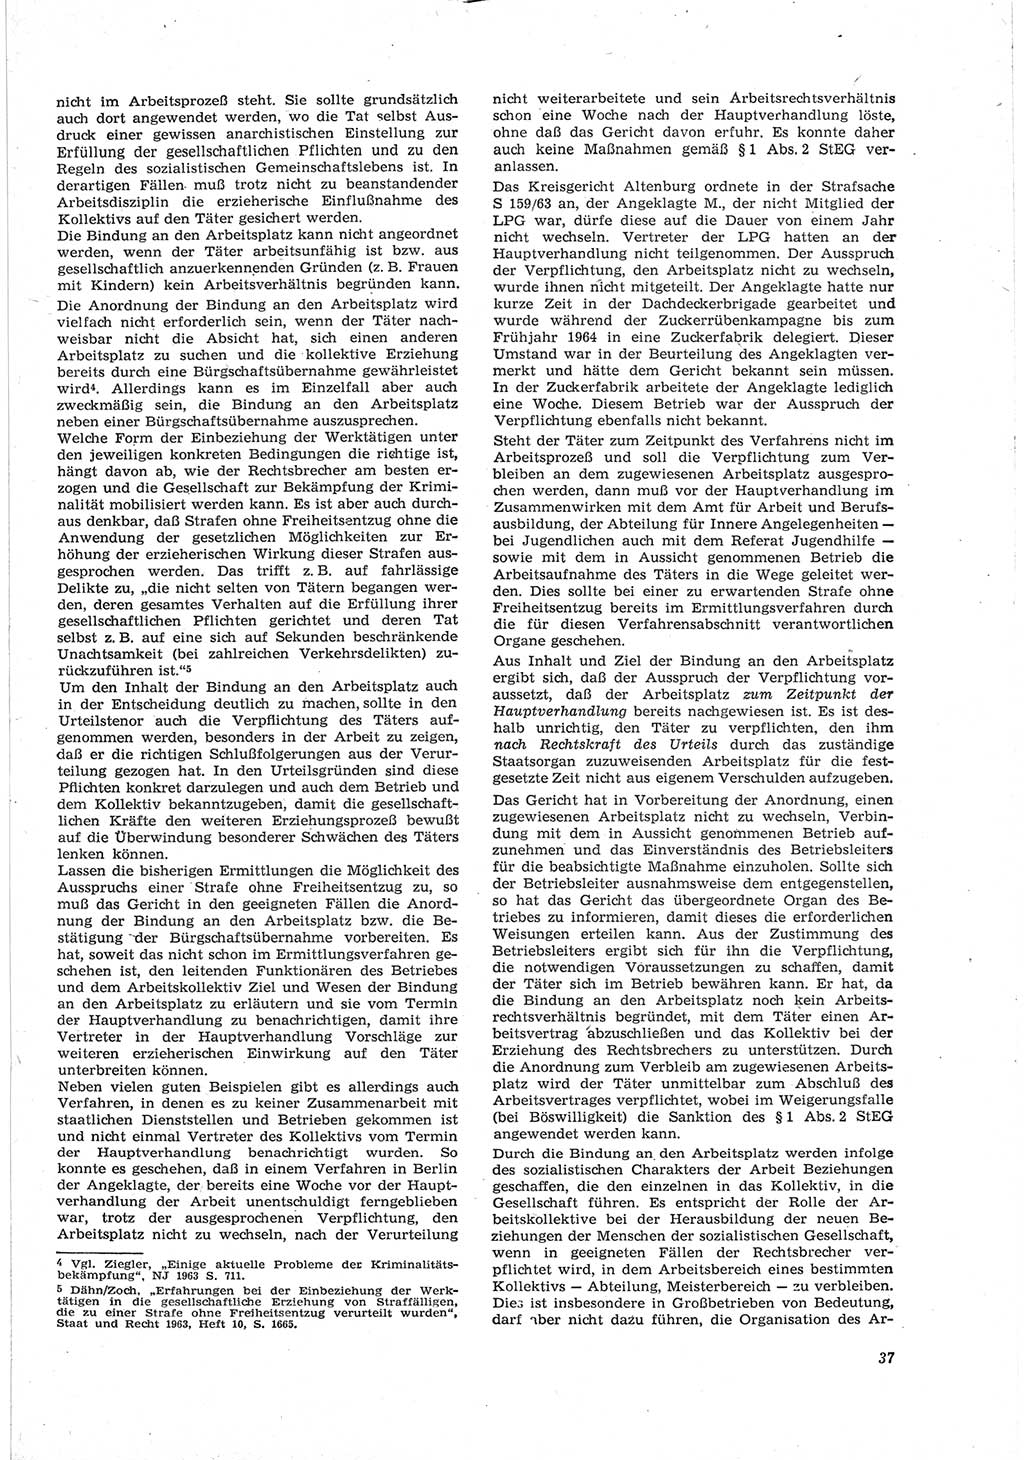 Neue Justiz (NJ), Zeitschrift für Recht und Rechtswissenschaft [Deutsche Demokratische Republik (DDR)], 18. Jahrgang 1964, Seite 37 (NJ DDR 1964, S. 37)